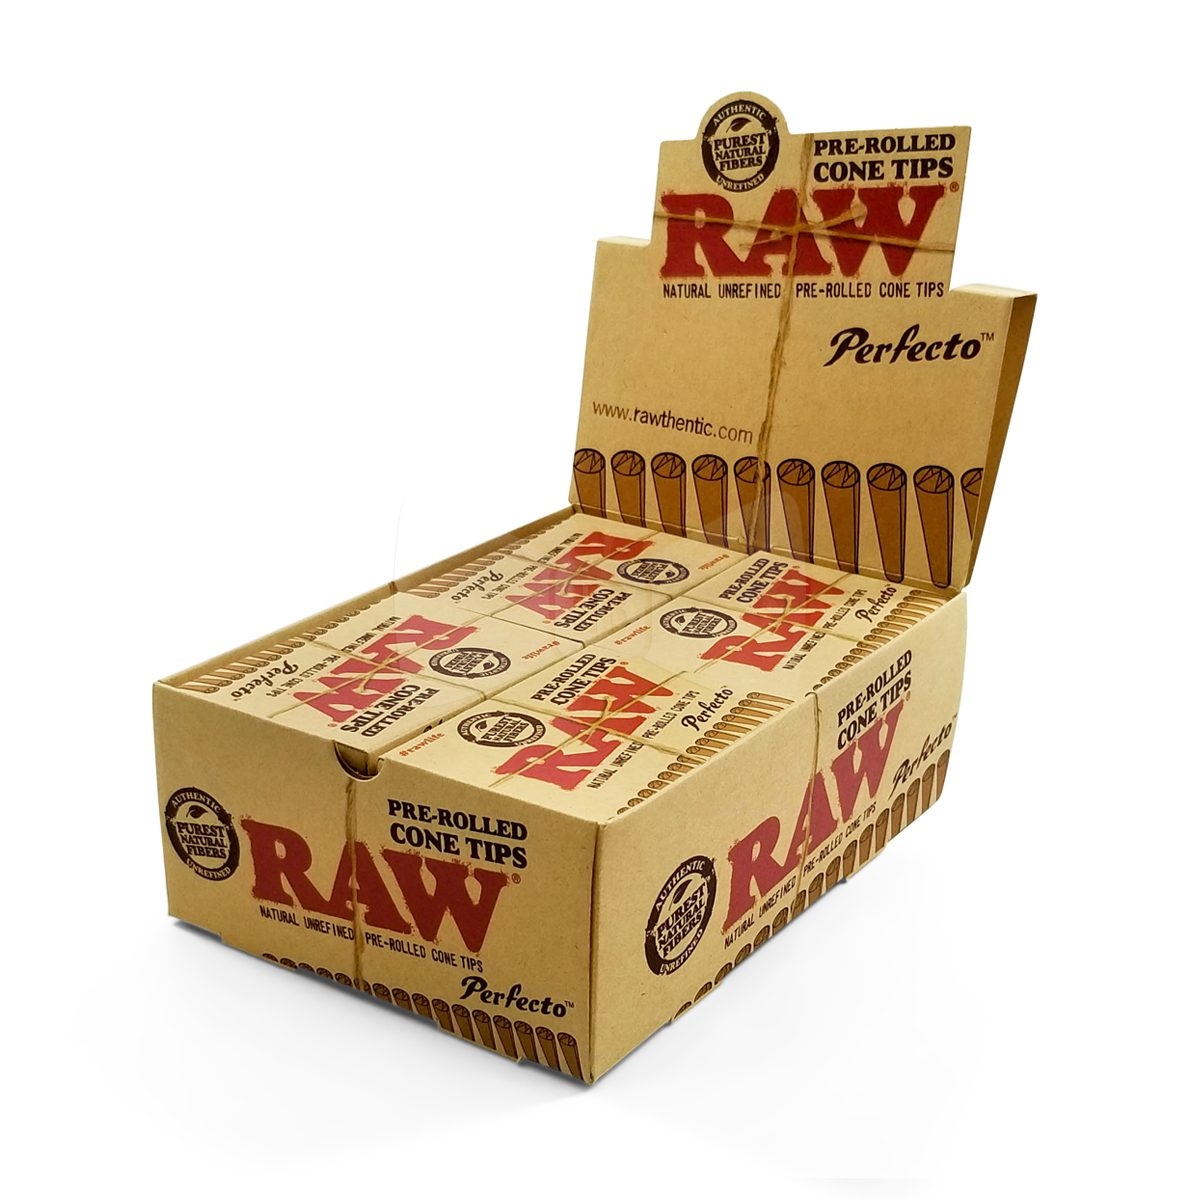 RAW Perfecto Pre-Rolled Cone Tips Box